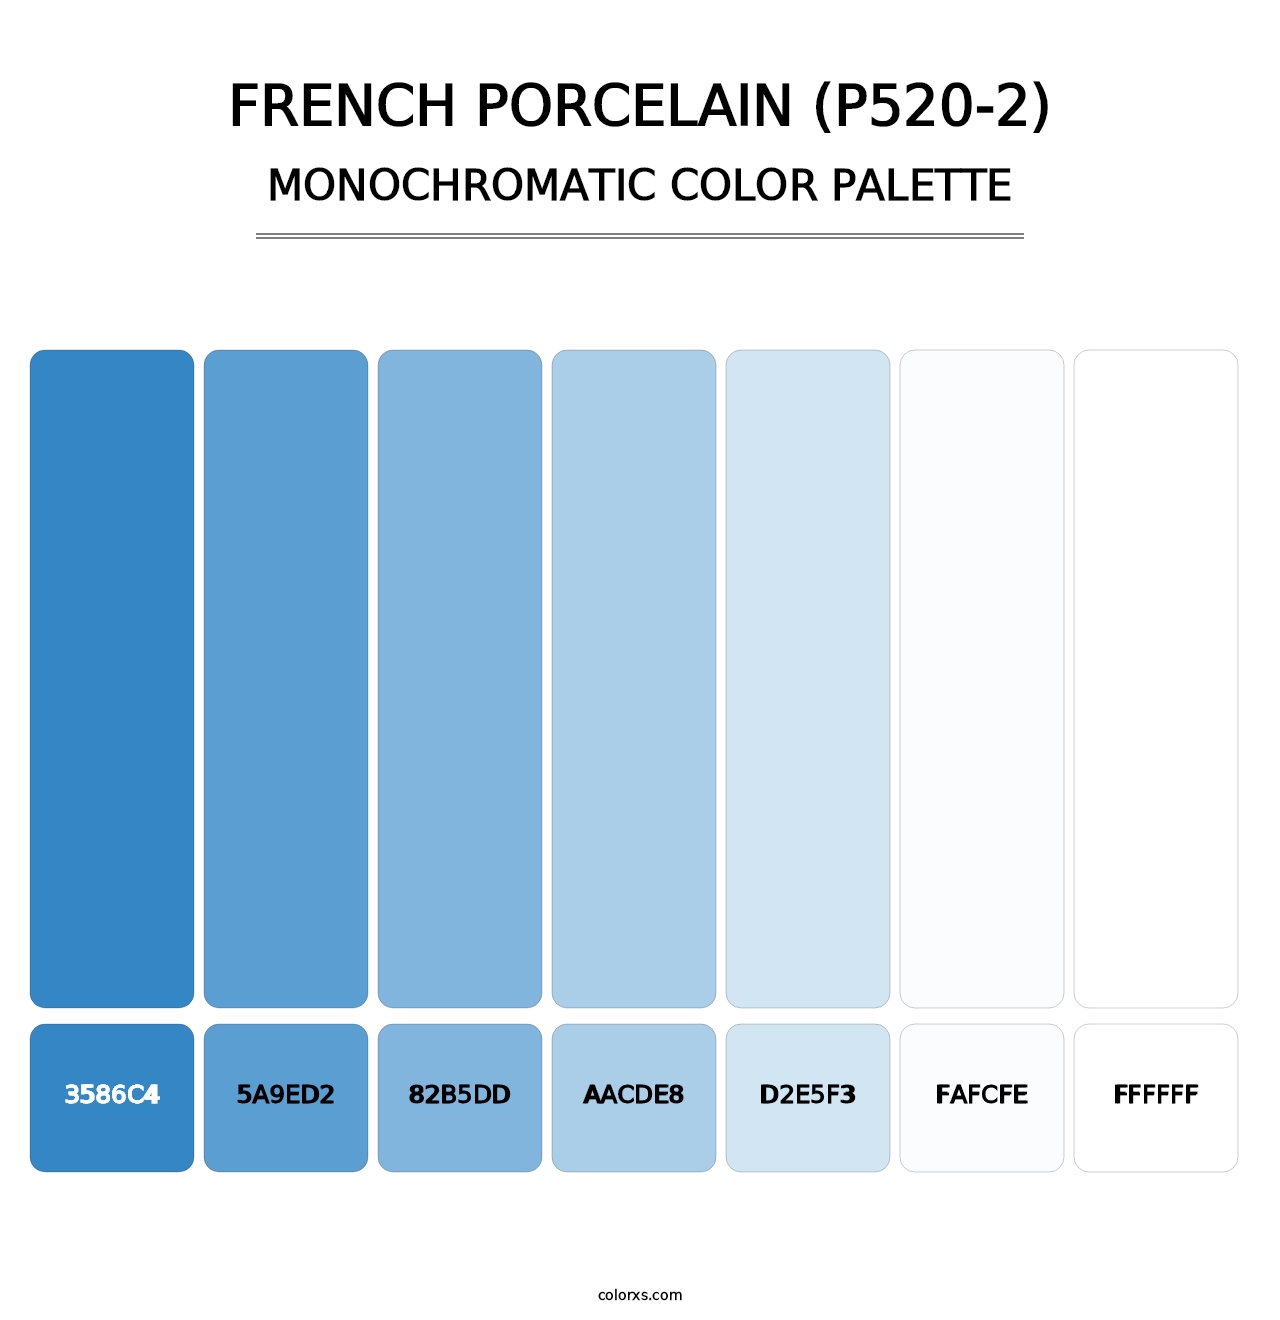 French Porcelain (P520-2) - Monochromatic Color Palette